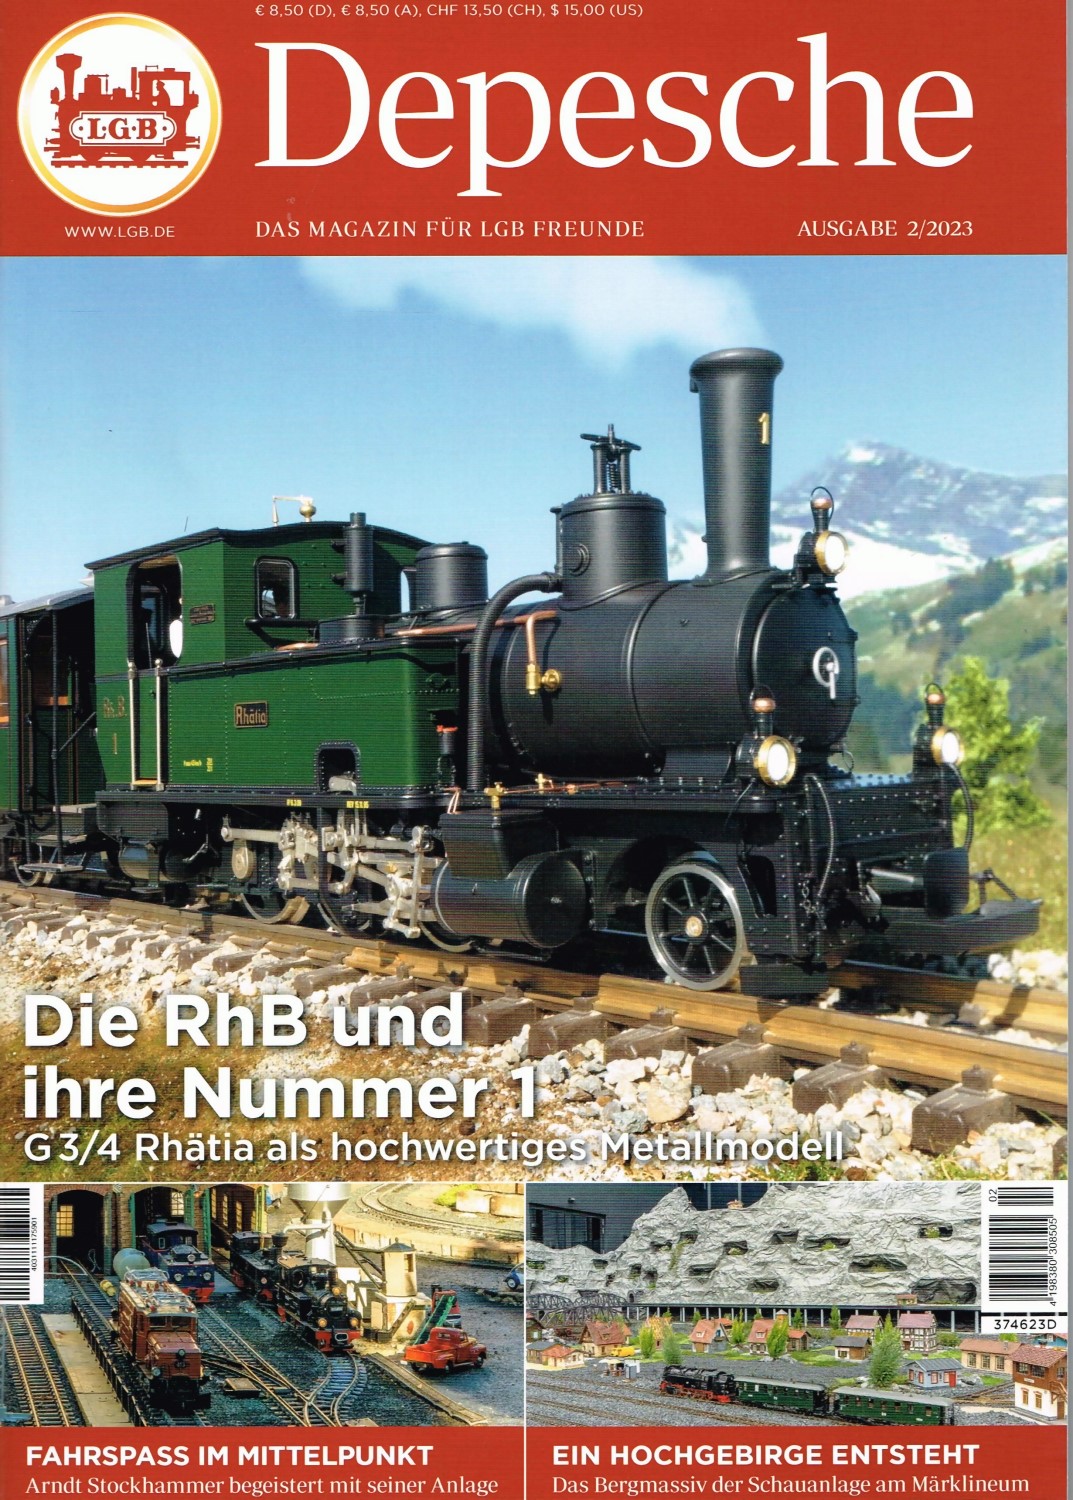 LGB Depesche 2023 - ausgeliefert. Bericht ber die Ge 4/6 353 und das Jubilum der Pinzgauer Lokalbahn in sterreich  